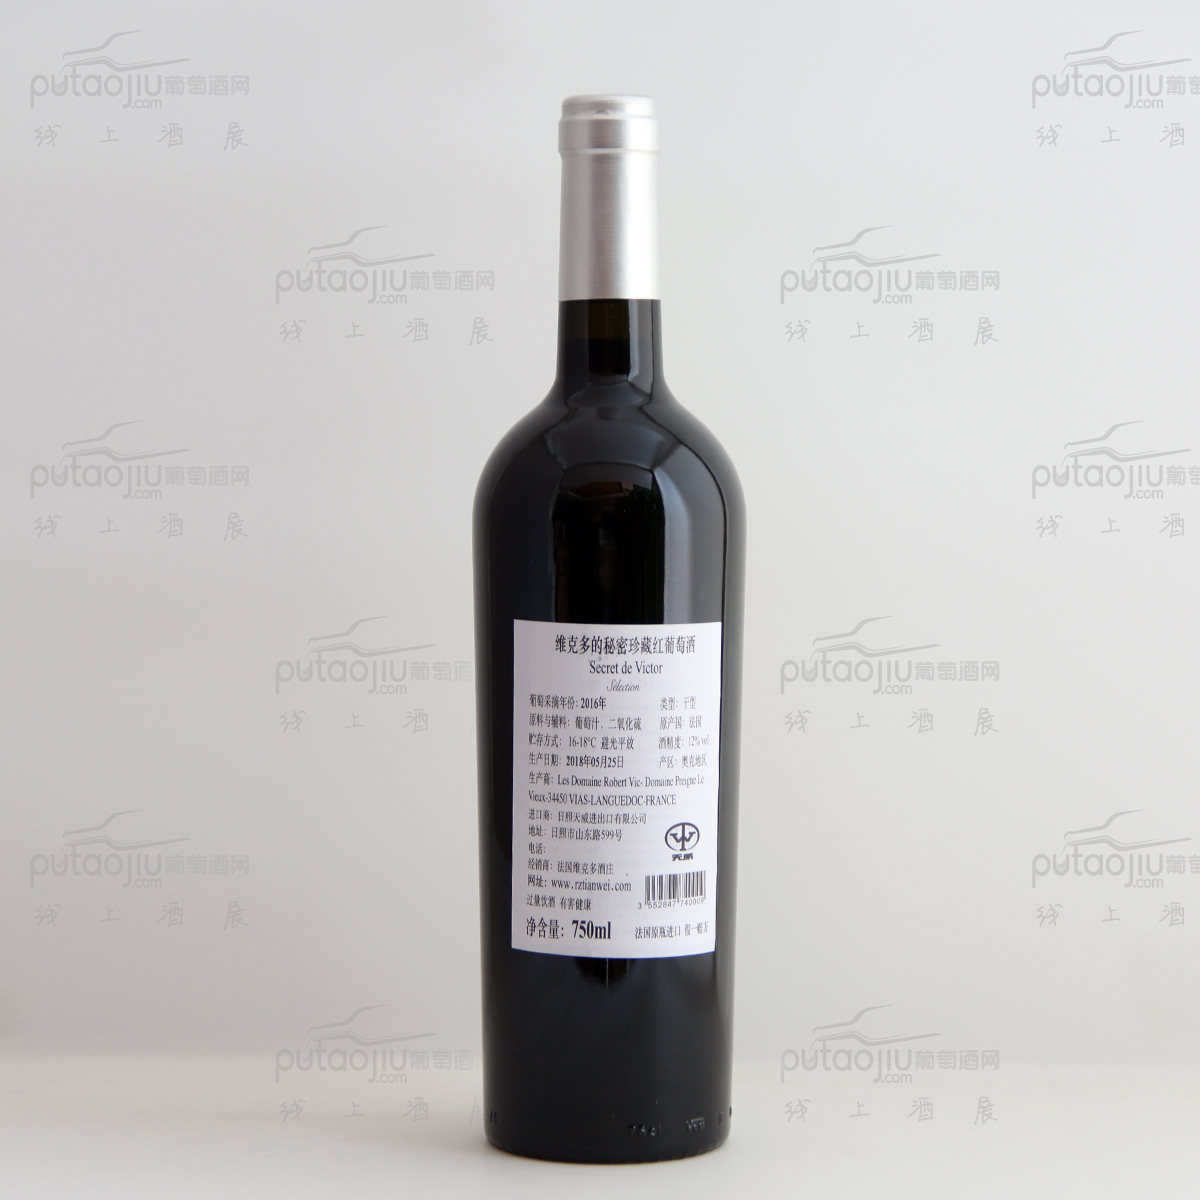 法国朗格多克鲁西荣Les Domaine Robert Vic酒庄混酿维克多的秘密珍藏VDF干红葡萄酒